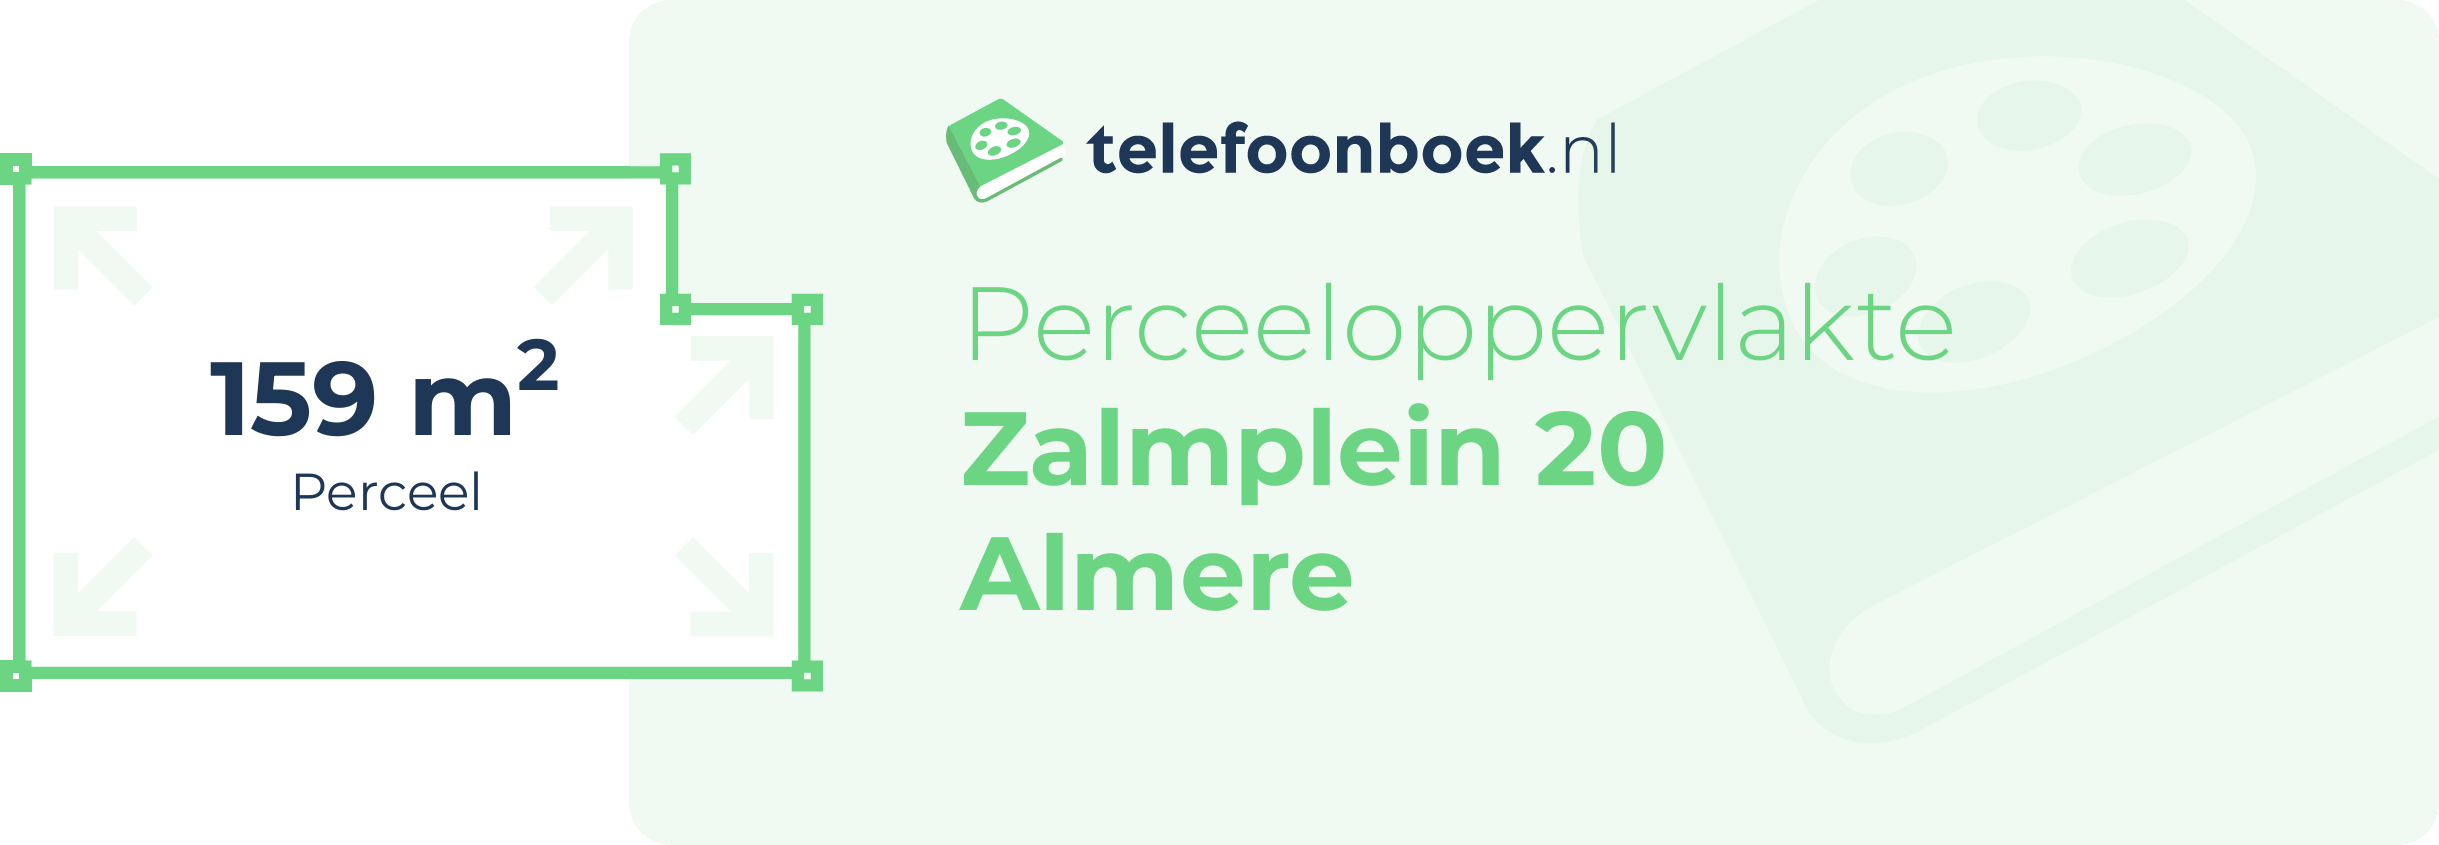 Perceeloppervlakte Zalmplein 20 Almere